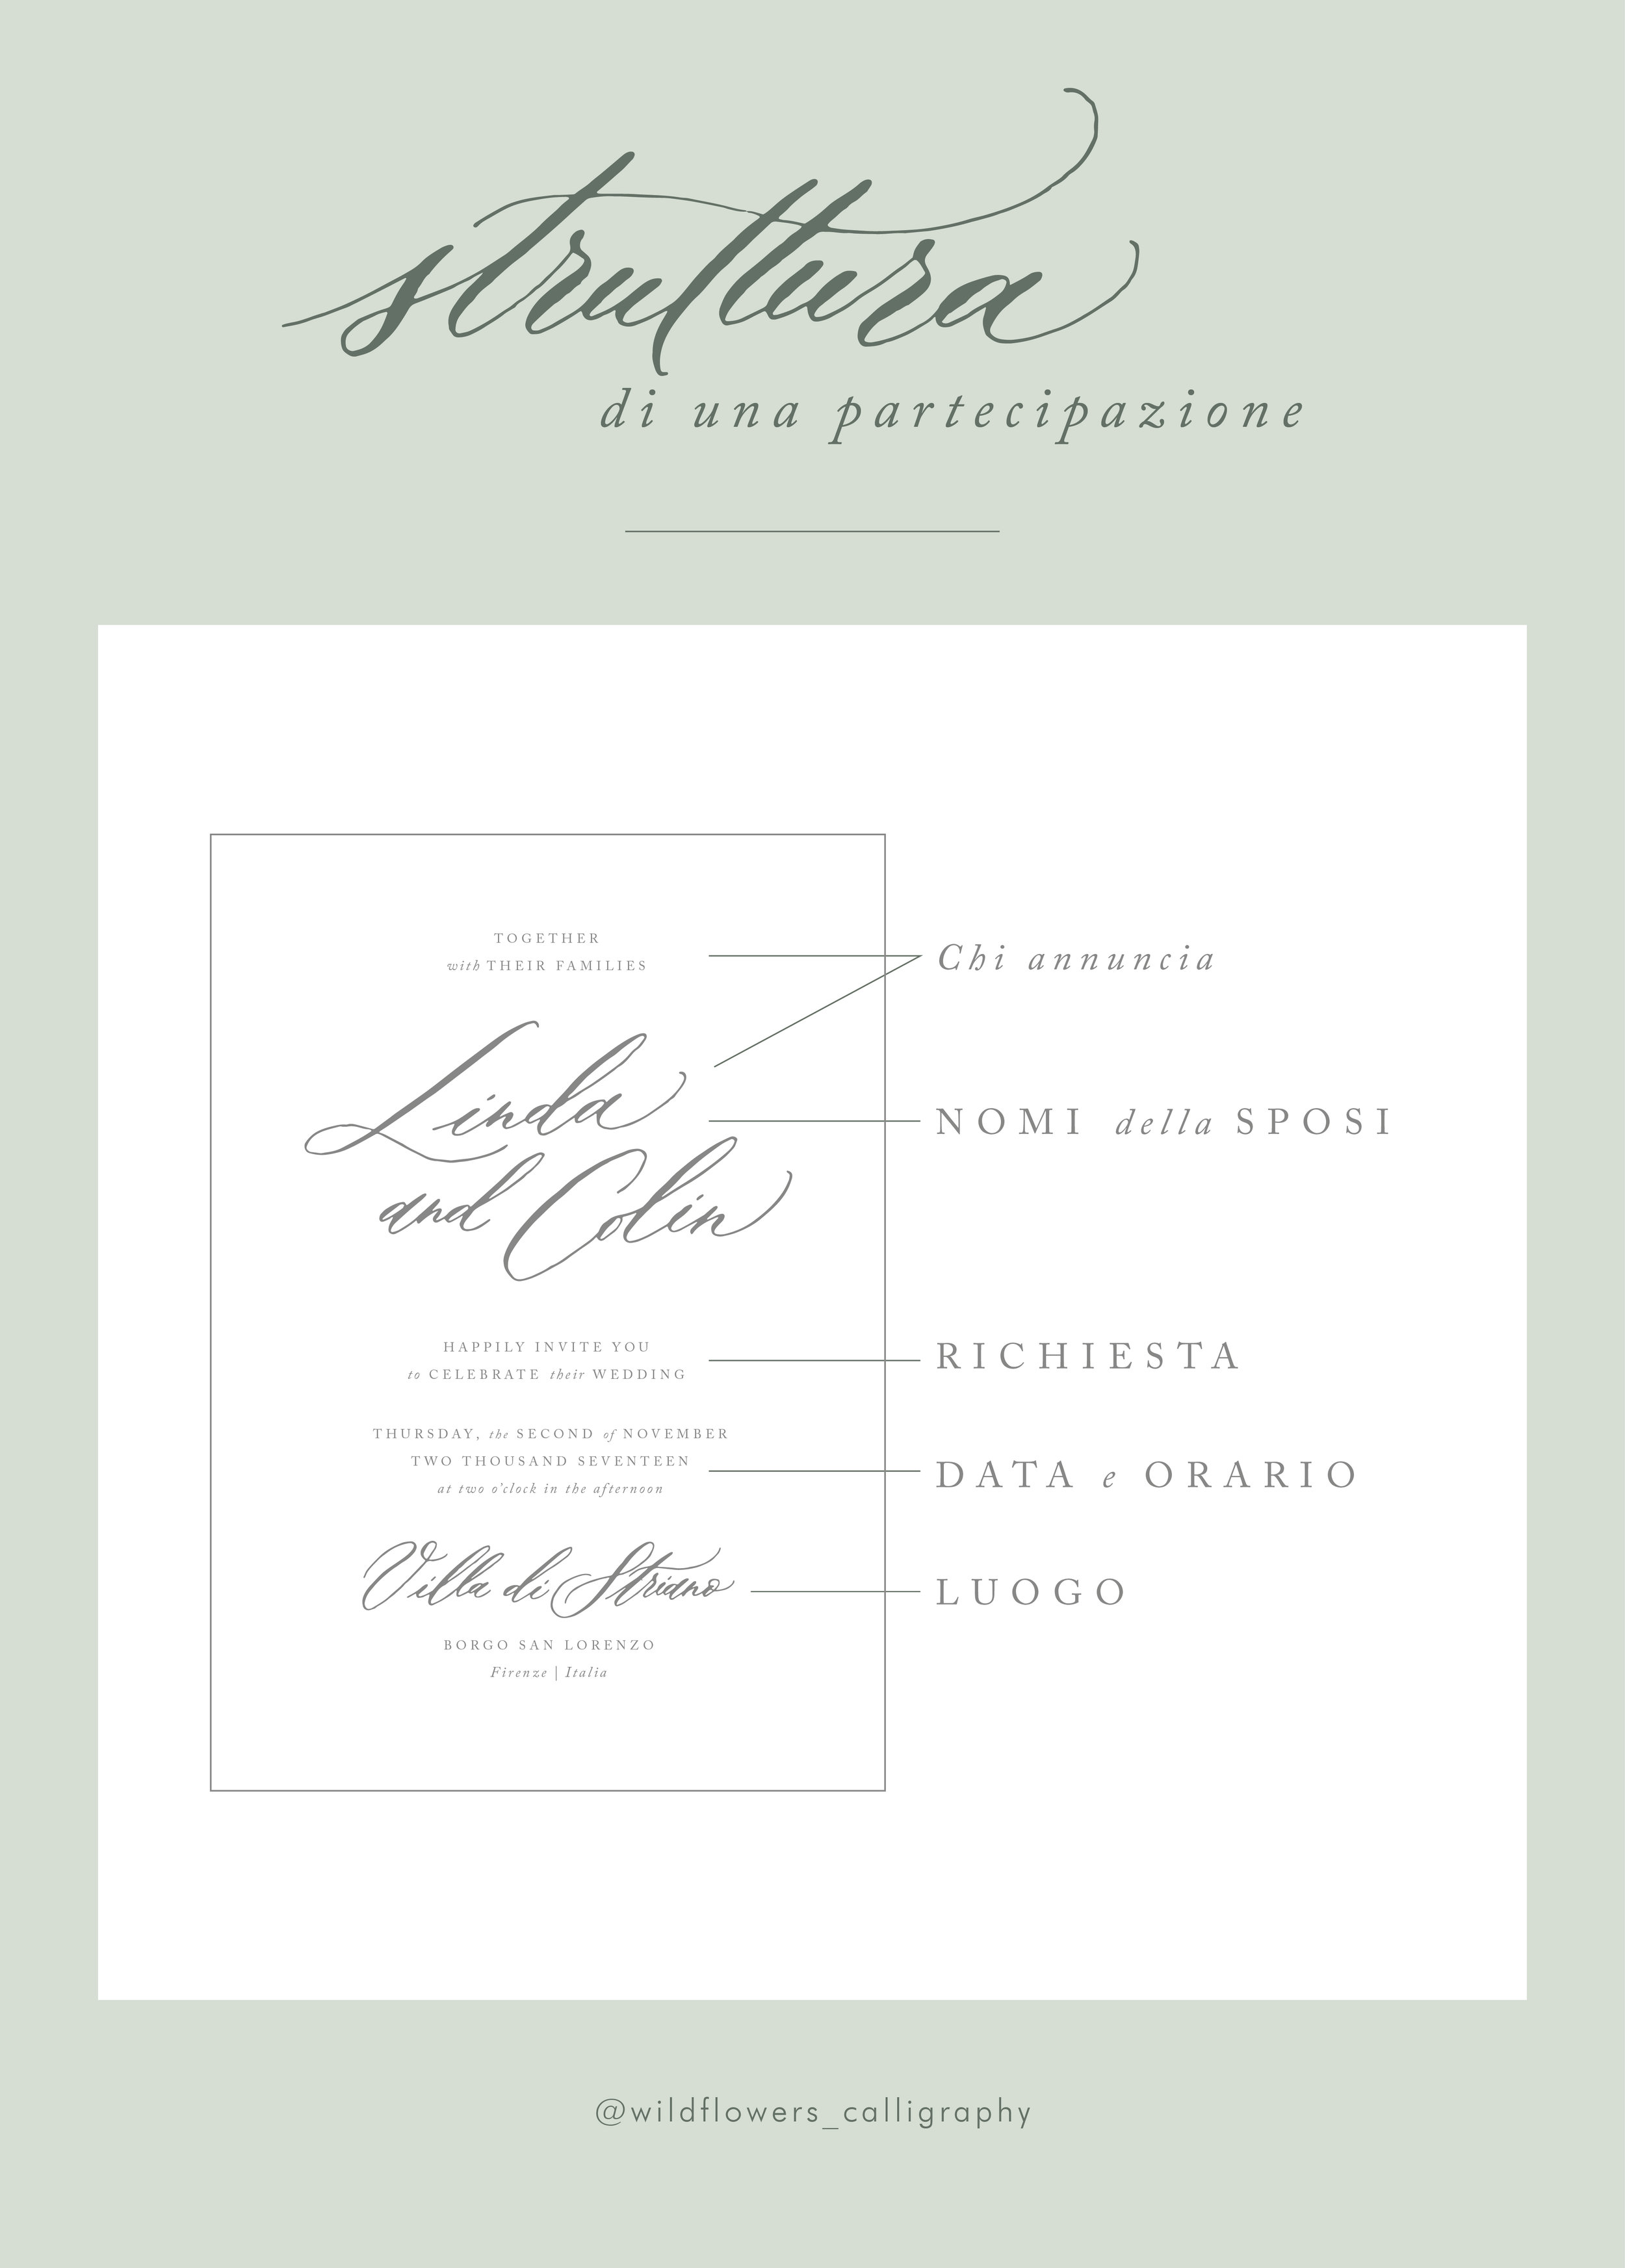 Formula Partecipazioni Matrimonio.Wildflowers Calligraphy Wedding Invitations 101 Cosa Scrivere